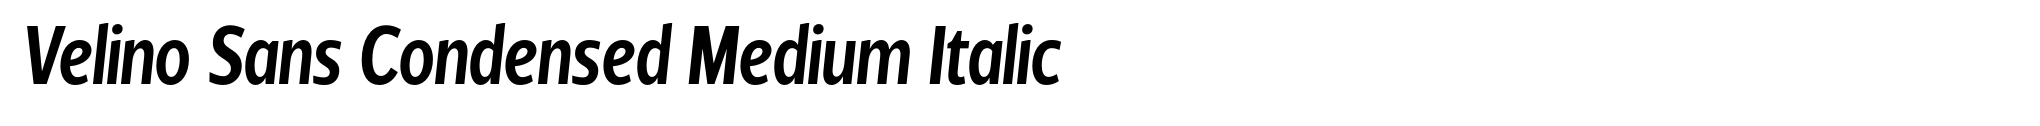 Velino Sans Condensed Medium Italic image